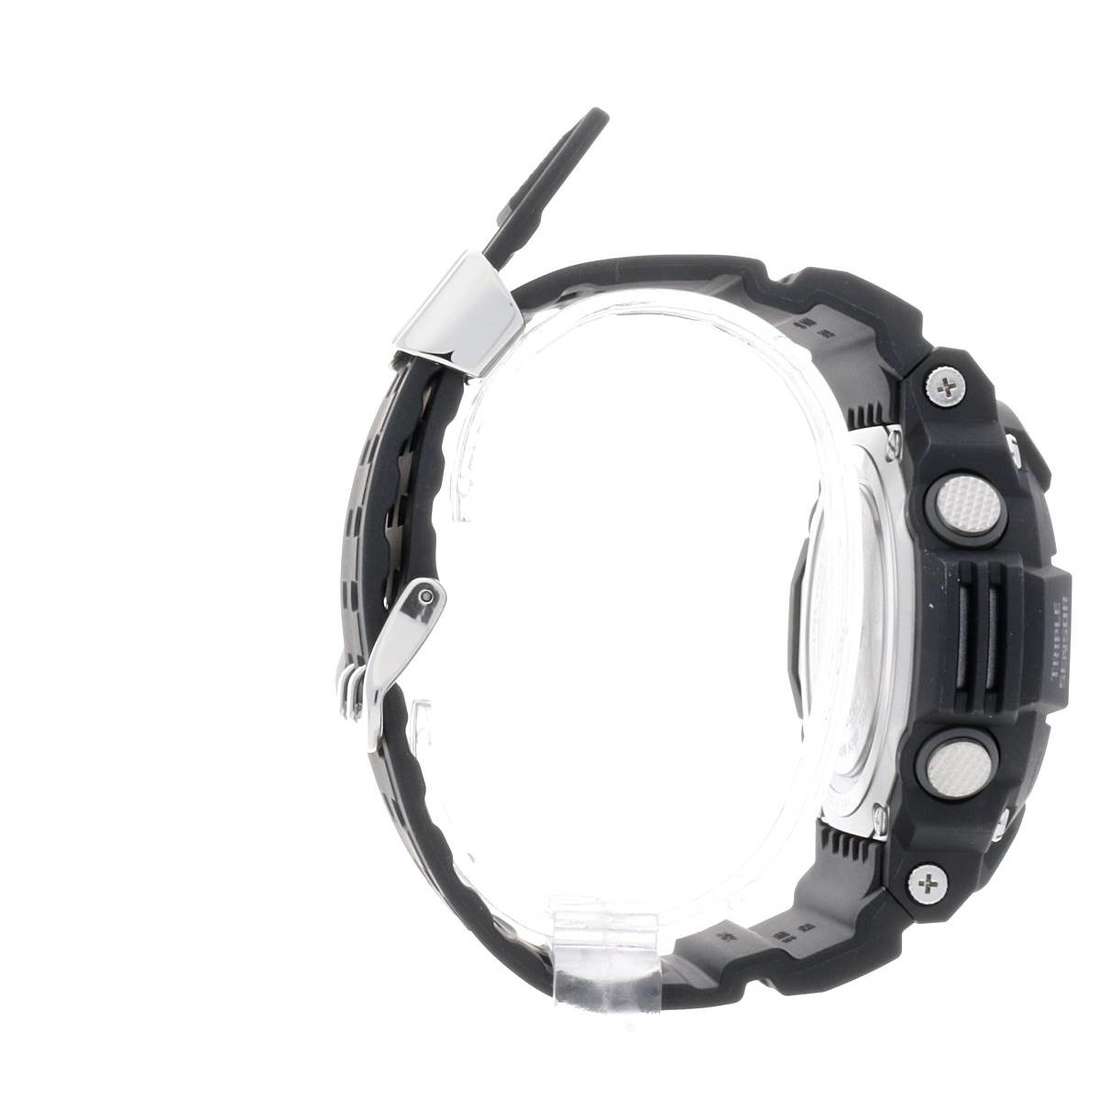 acquista orologi uomo G-Shock GW-9400-1ER